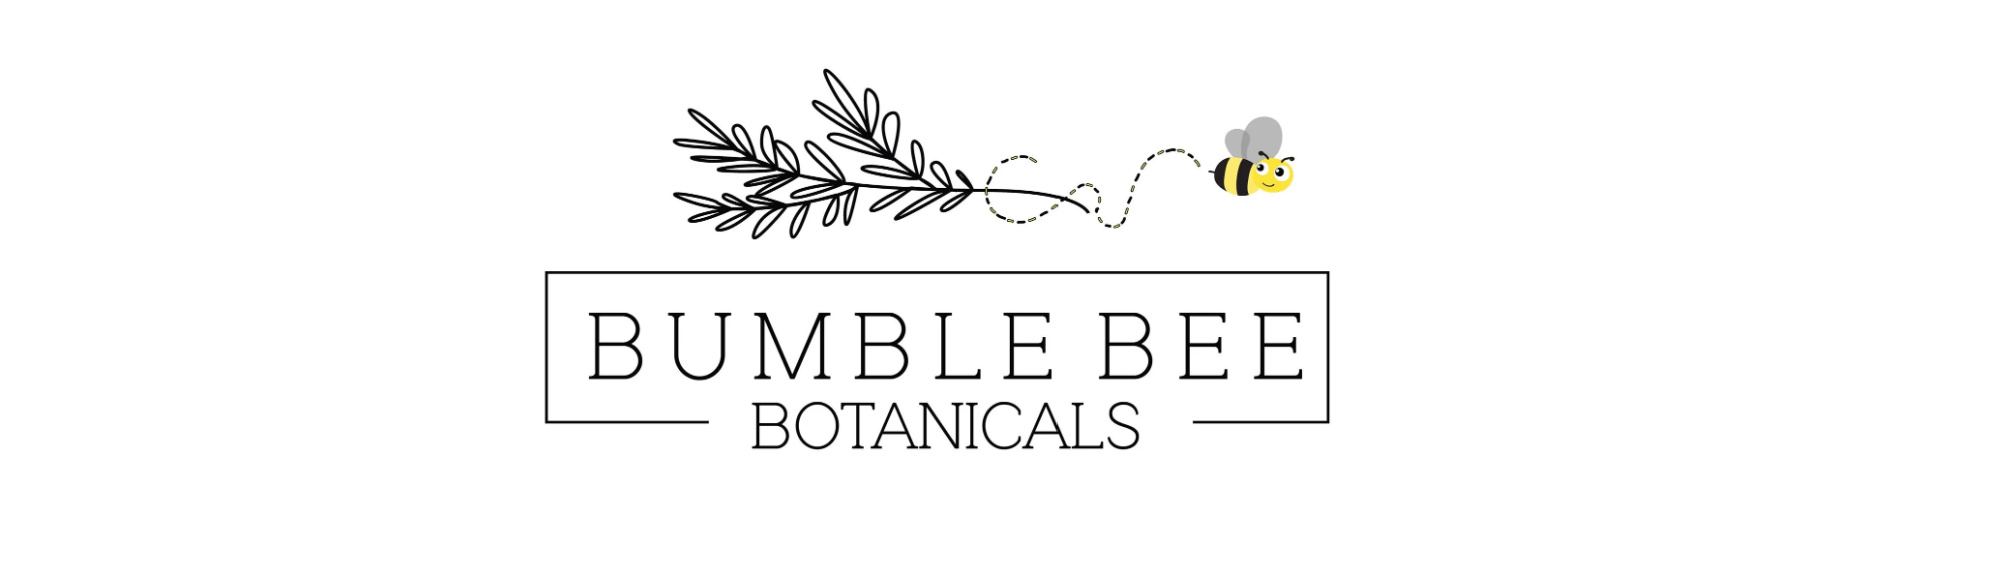 image of bumble bee botanicals in berkeley ca